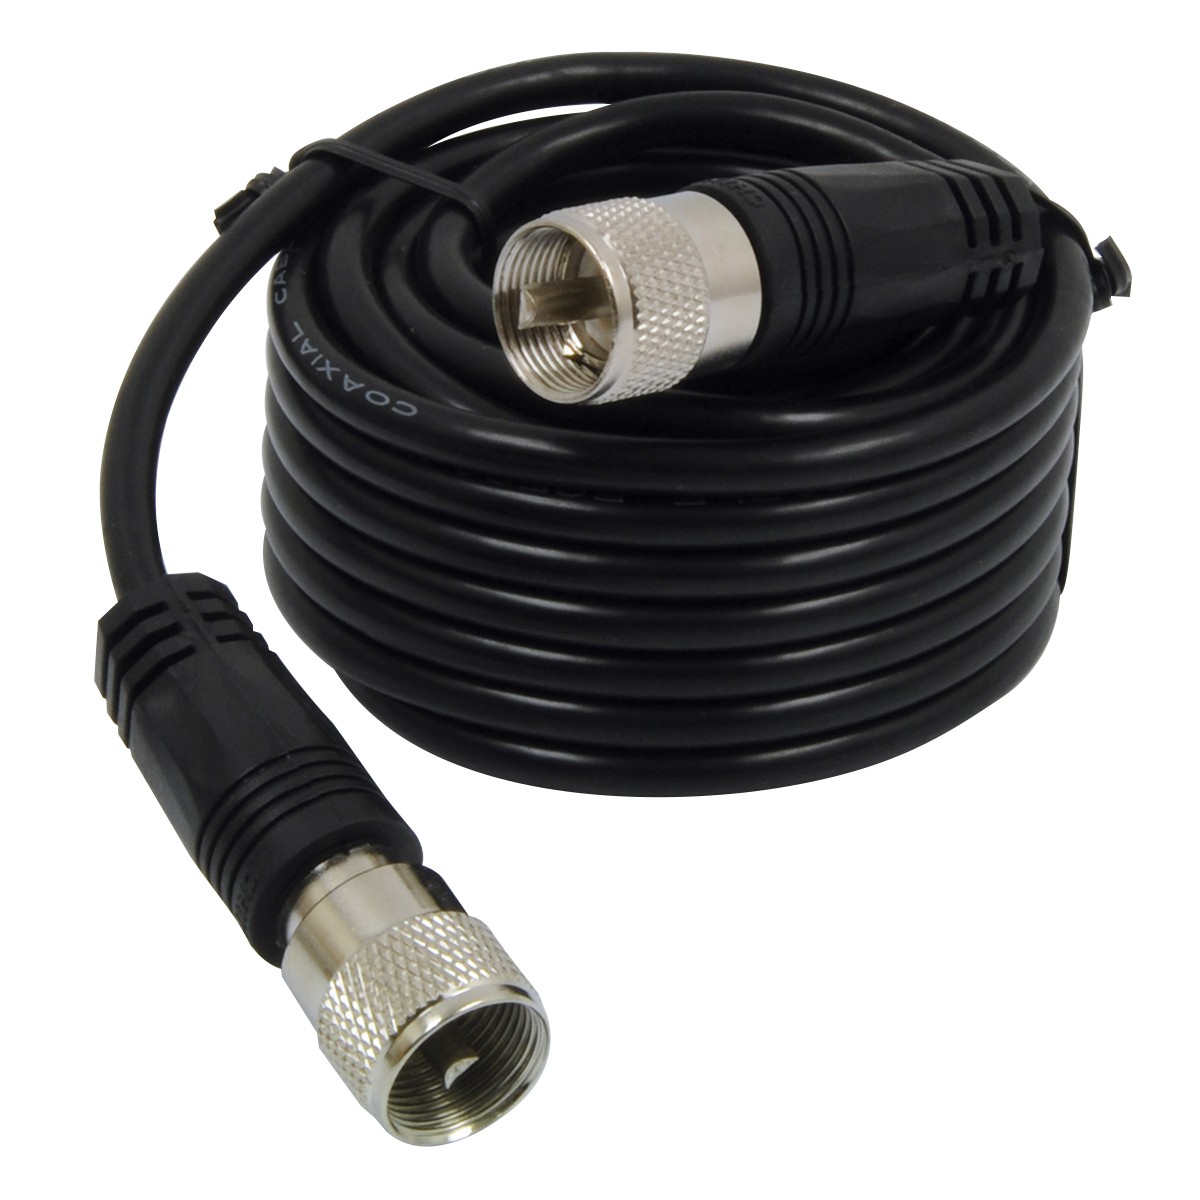 18' Rg58Au Cable W/Pl259